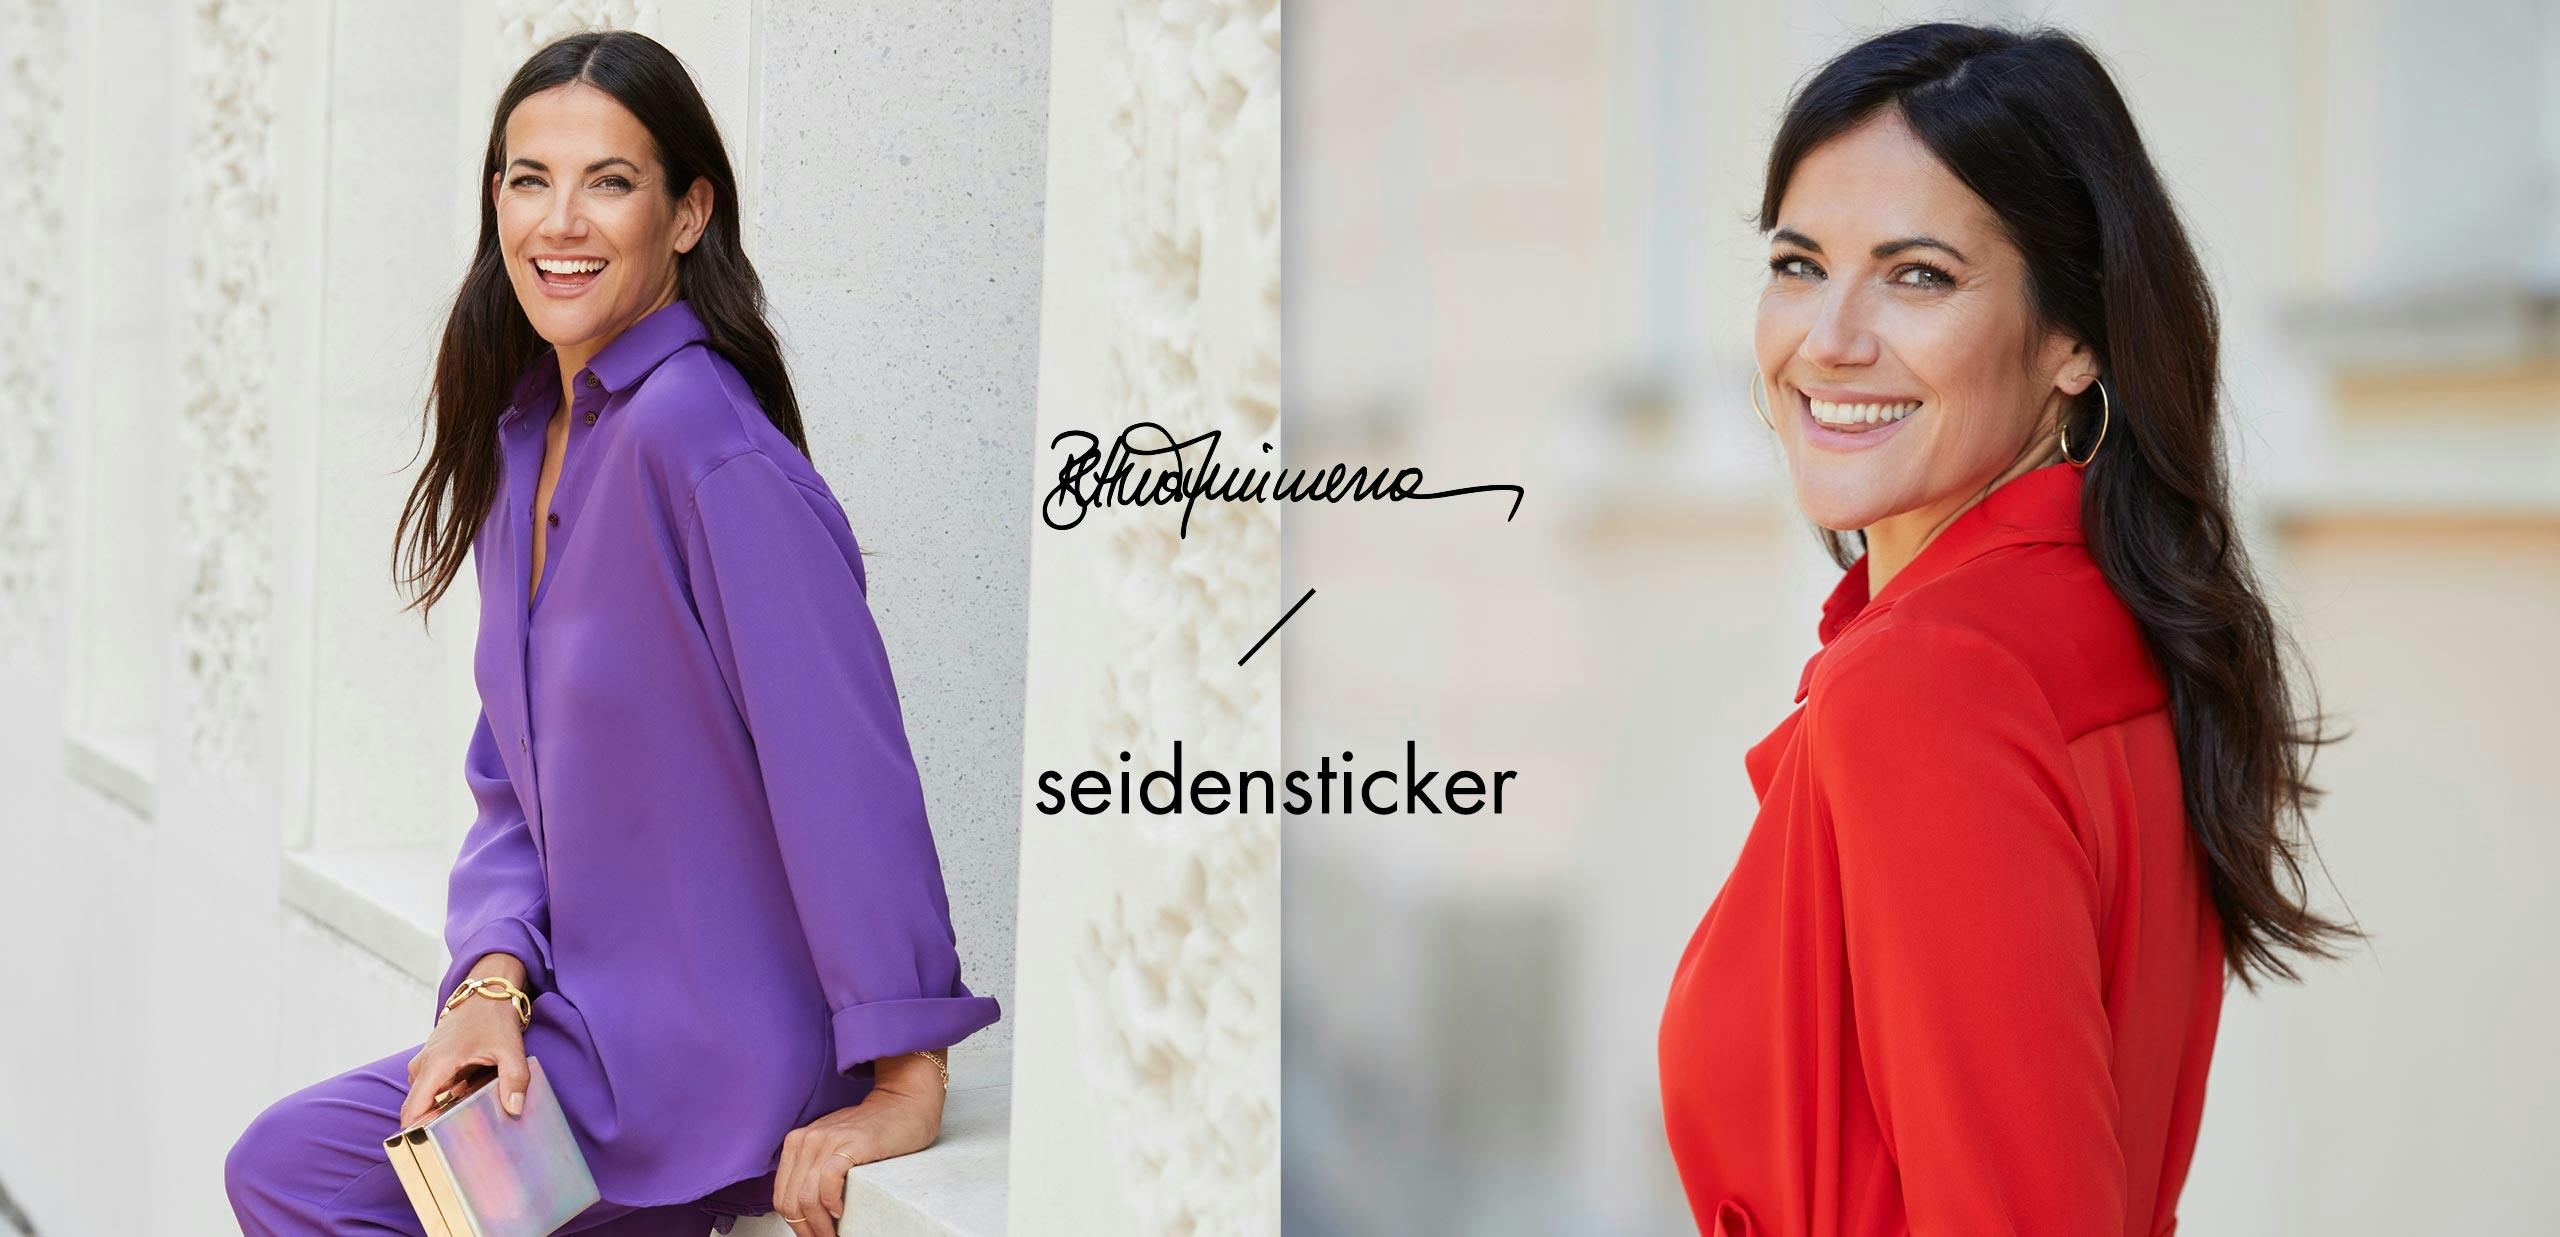 Bettina Zimmermann / Seidensticker